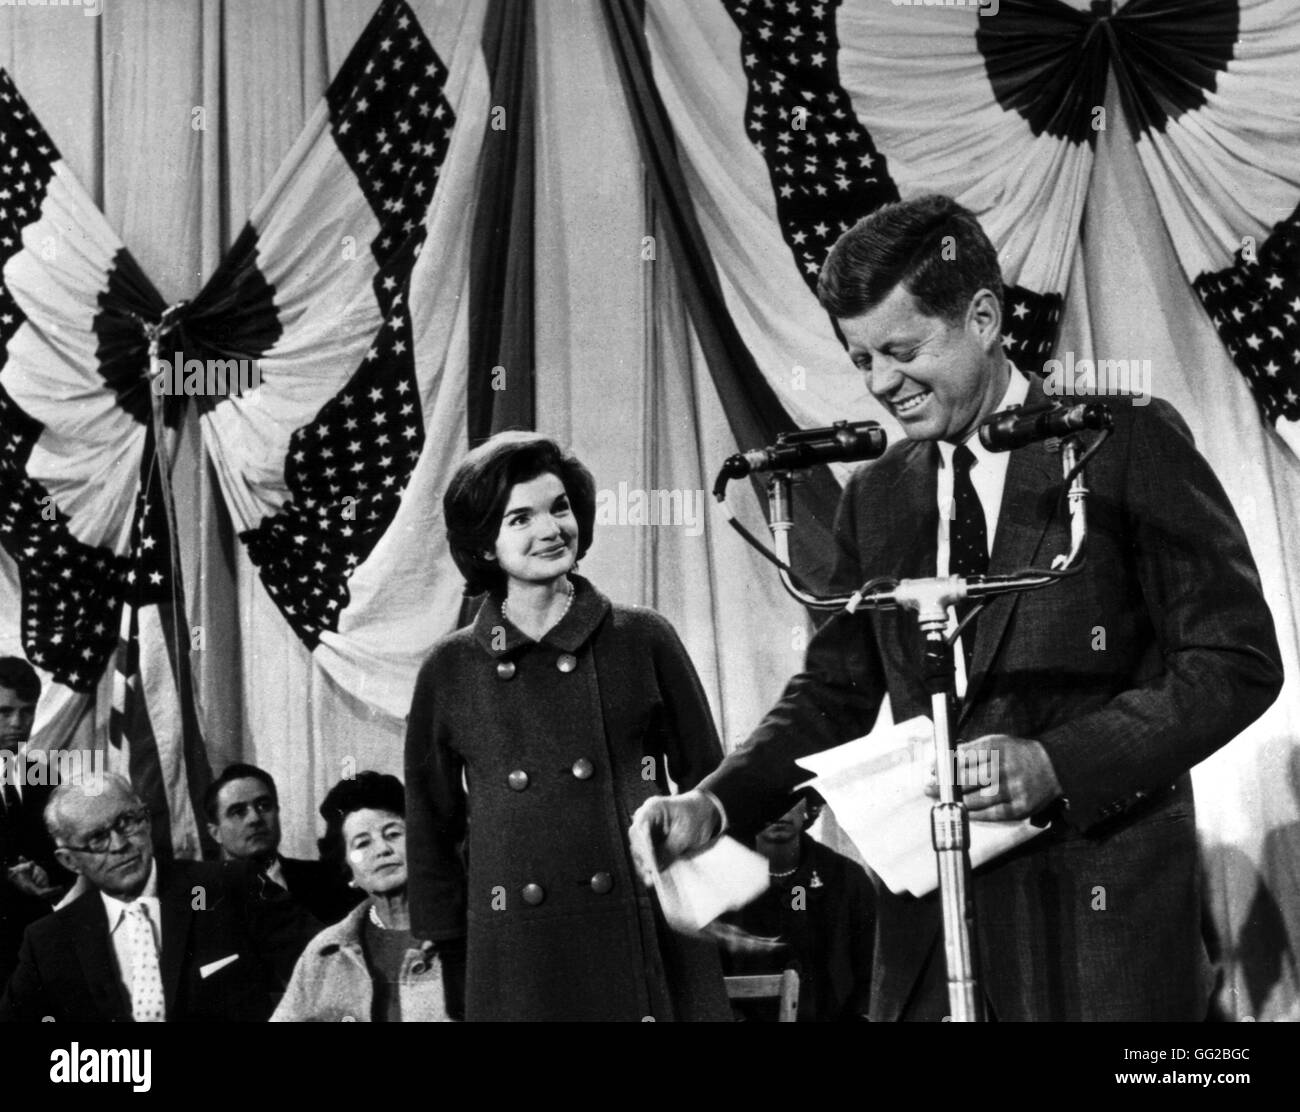 Jacqueline Kennedy zeigt Glück und Zufriedenheit, wie sie an den neuen Präsidenten, John Kennedy, sucht, der die Sitzung, nach die ganze Nacht warten auf die Wahlergebnisse richtet. November 1960 Archive Vereinigte Staaten nationale. Washington Stockfoto